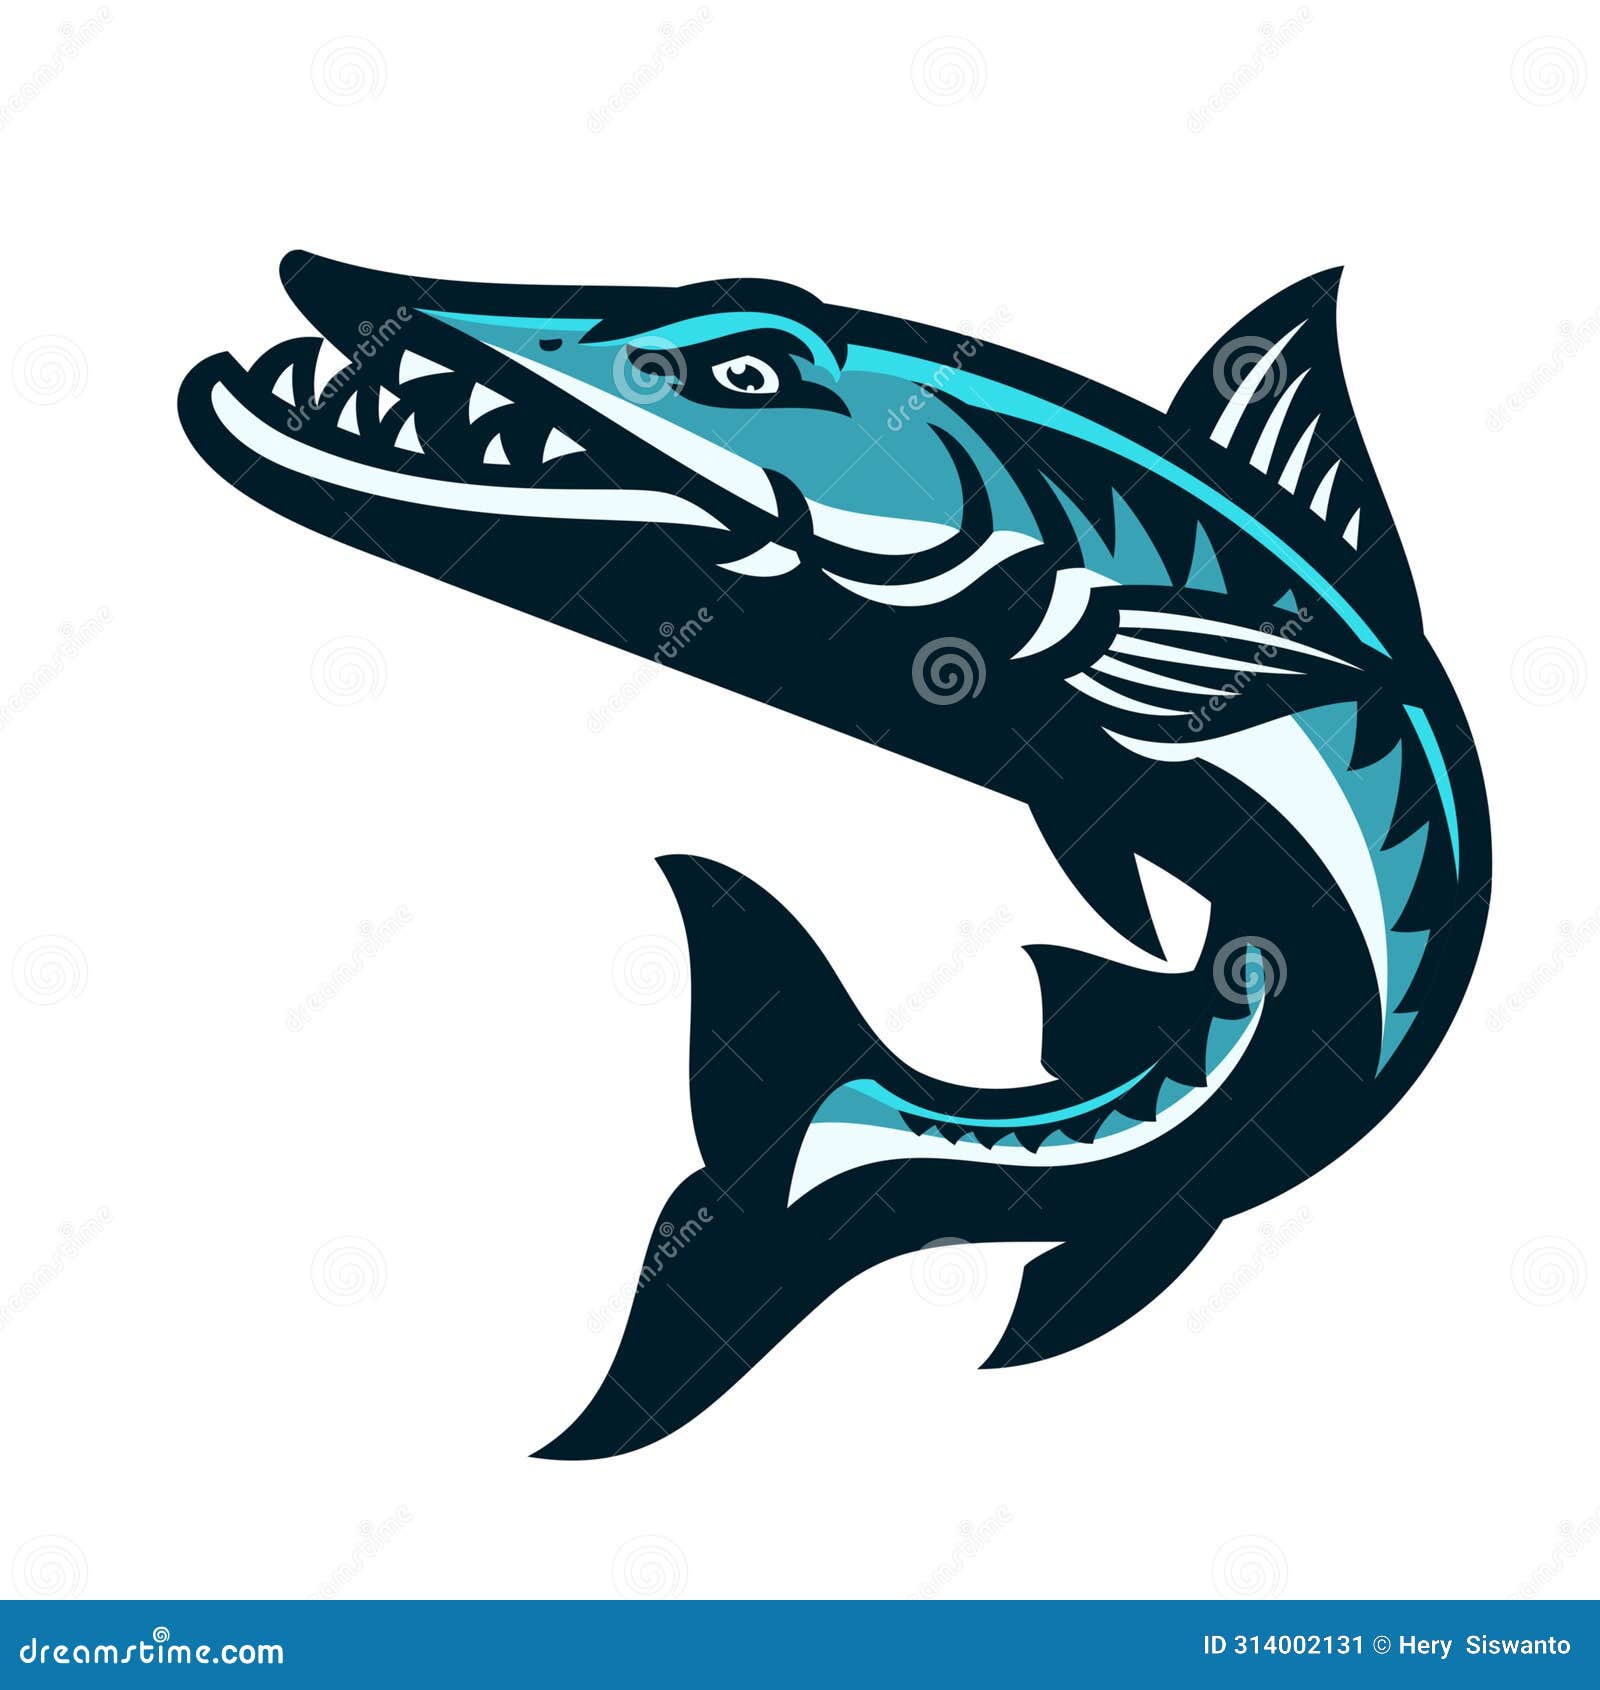 jumping barracuda fish sport mascot cartoon